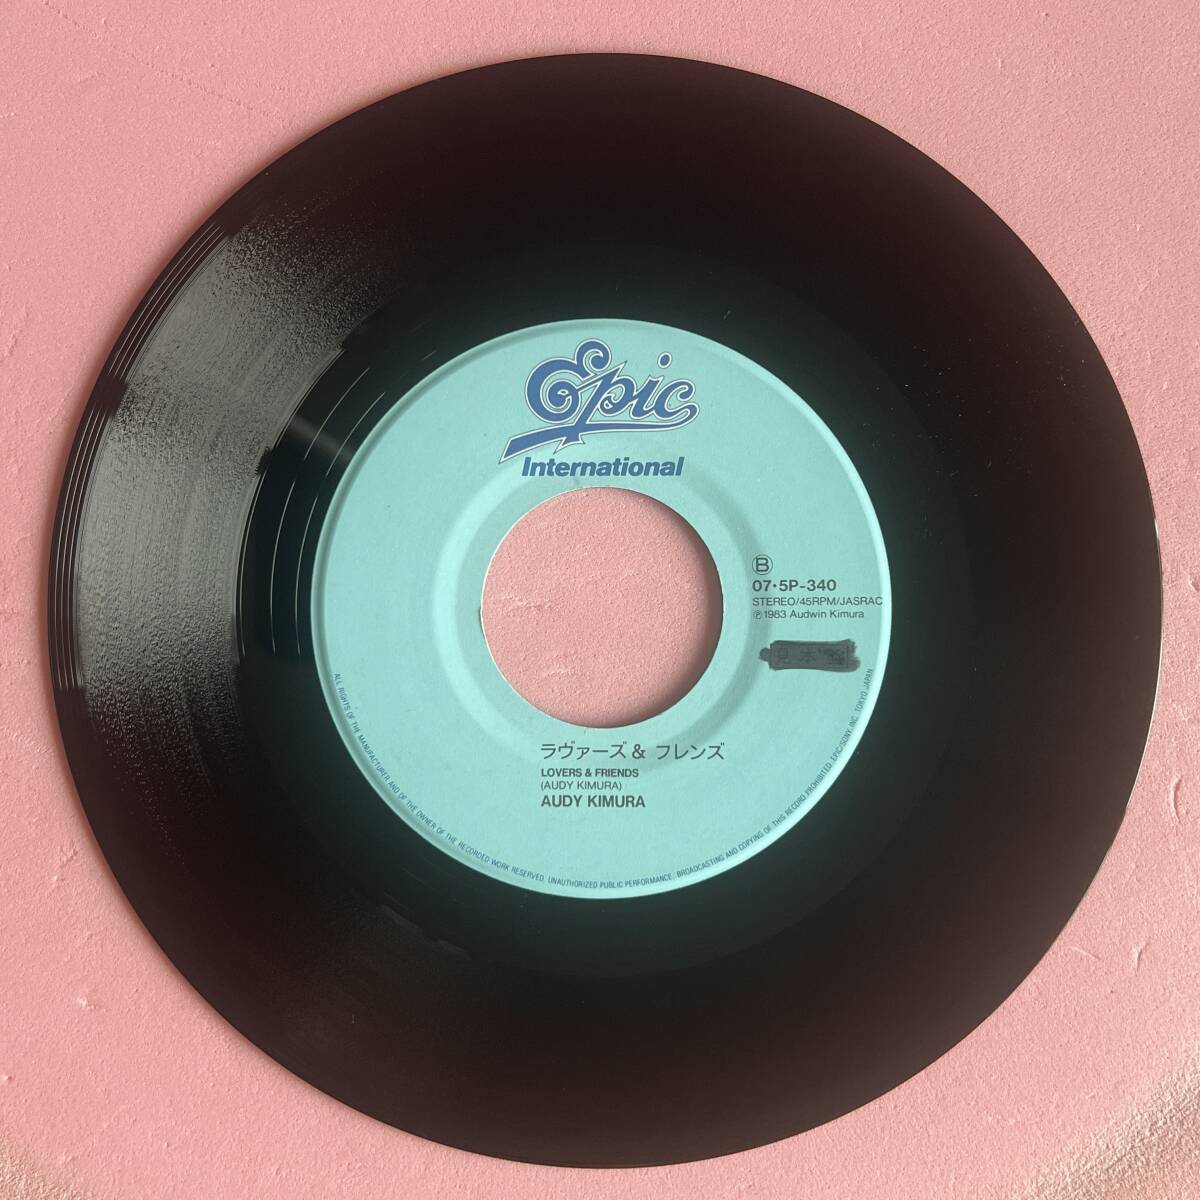 アーディ・キムラ AUDY KIMURA Mellow Kind Of Love 国内盤 プロモ 45 シングル HAWAII AOR 1983 EPIC 07 5P-340の画像6